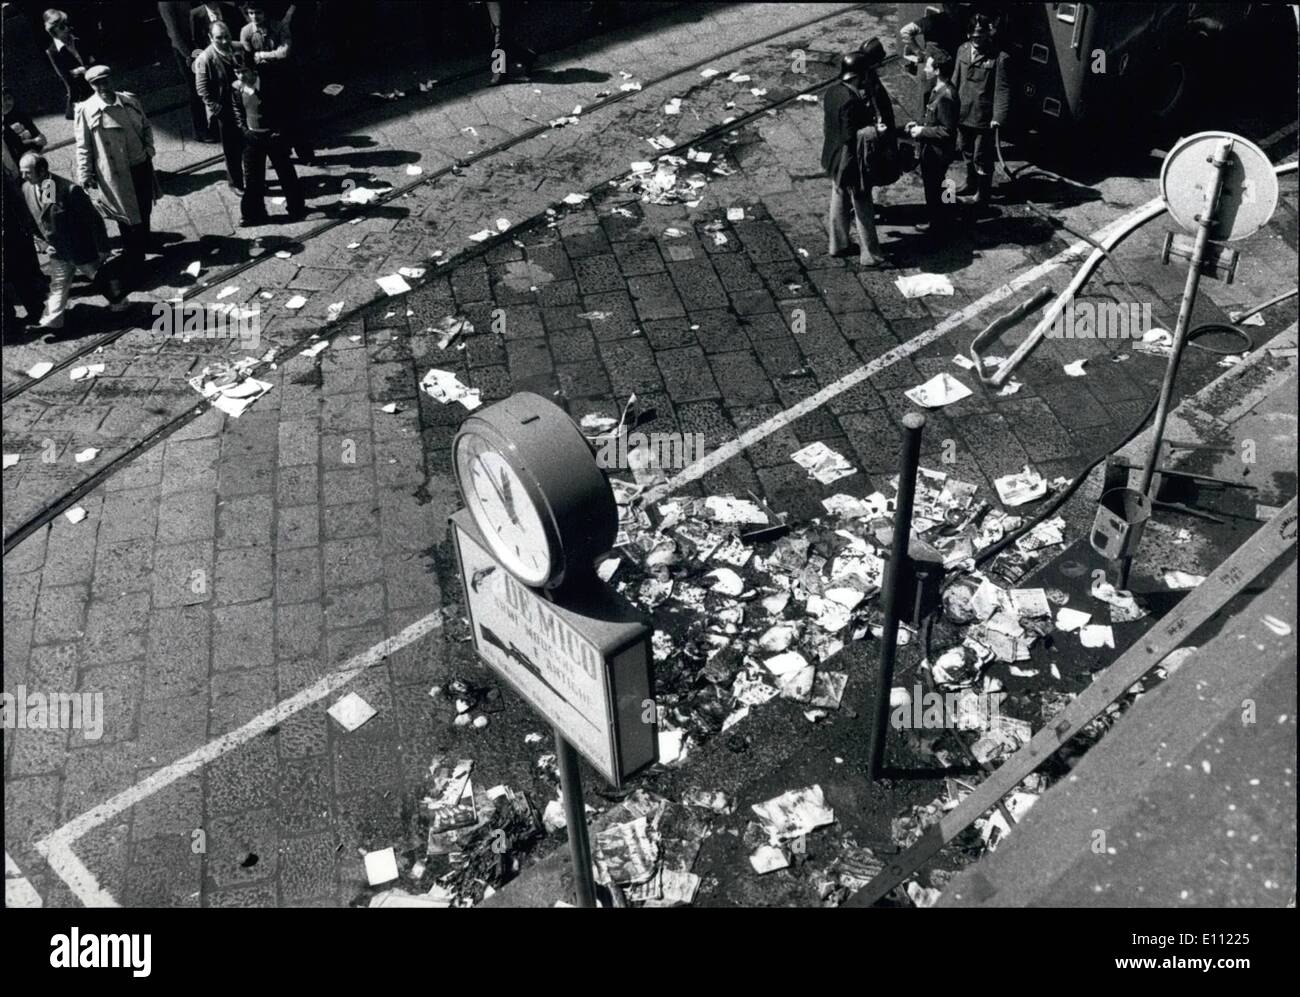 4. April 1975 - Bürgerkrieg zwischen links und rechts: nach dem Mord an eine 18 jährige '' Leftish'' junge auf diesem Teil der ebenso junge Faschisten, Milan linke Elemente heute begann die große Rache. Eine Bombe gesprengt in der Milan-Büros von der bekannten römischen faschistischen wöchentliche '' Lo Specchio'' ('' The Mirror"). Viele Leute waren verwundete Feuer-Brigademen eilte zu der Szene, aber es war zu spät. Der linke Außenstürmer schleuderte auch Brandbomben gegen eine Cafeteria Bar und hier, Milan Feuer Brigademen mussten auch viel, um das Schlimmste zu verhindern arbeiten Stockfoto